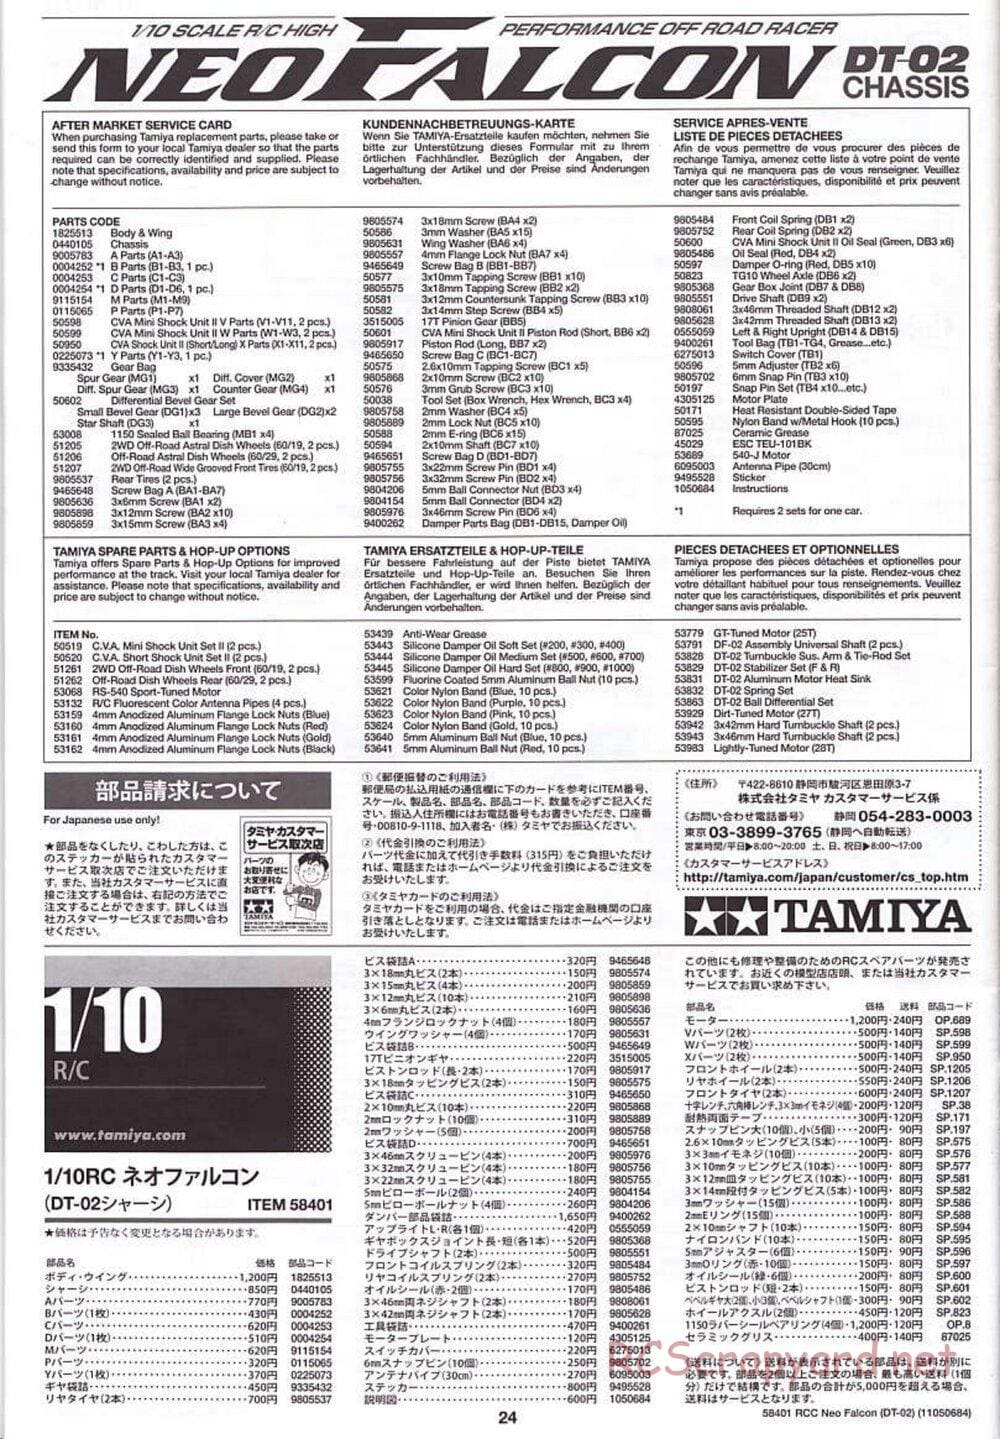 Tamiya - Neo Falcon Chassis - Manual - Page 24